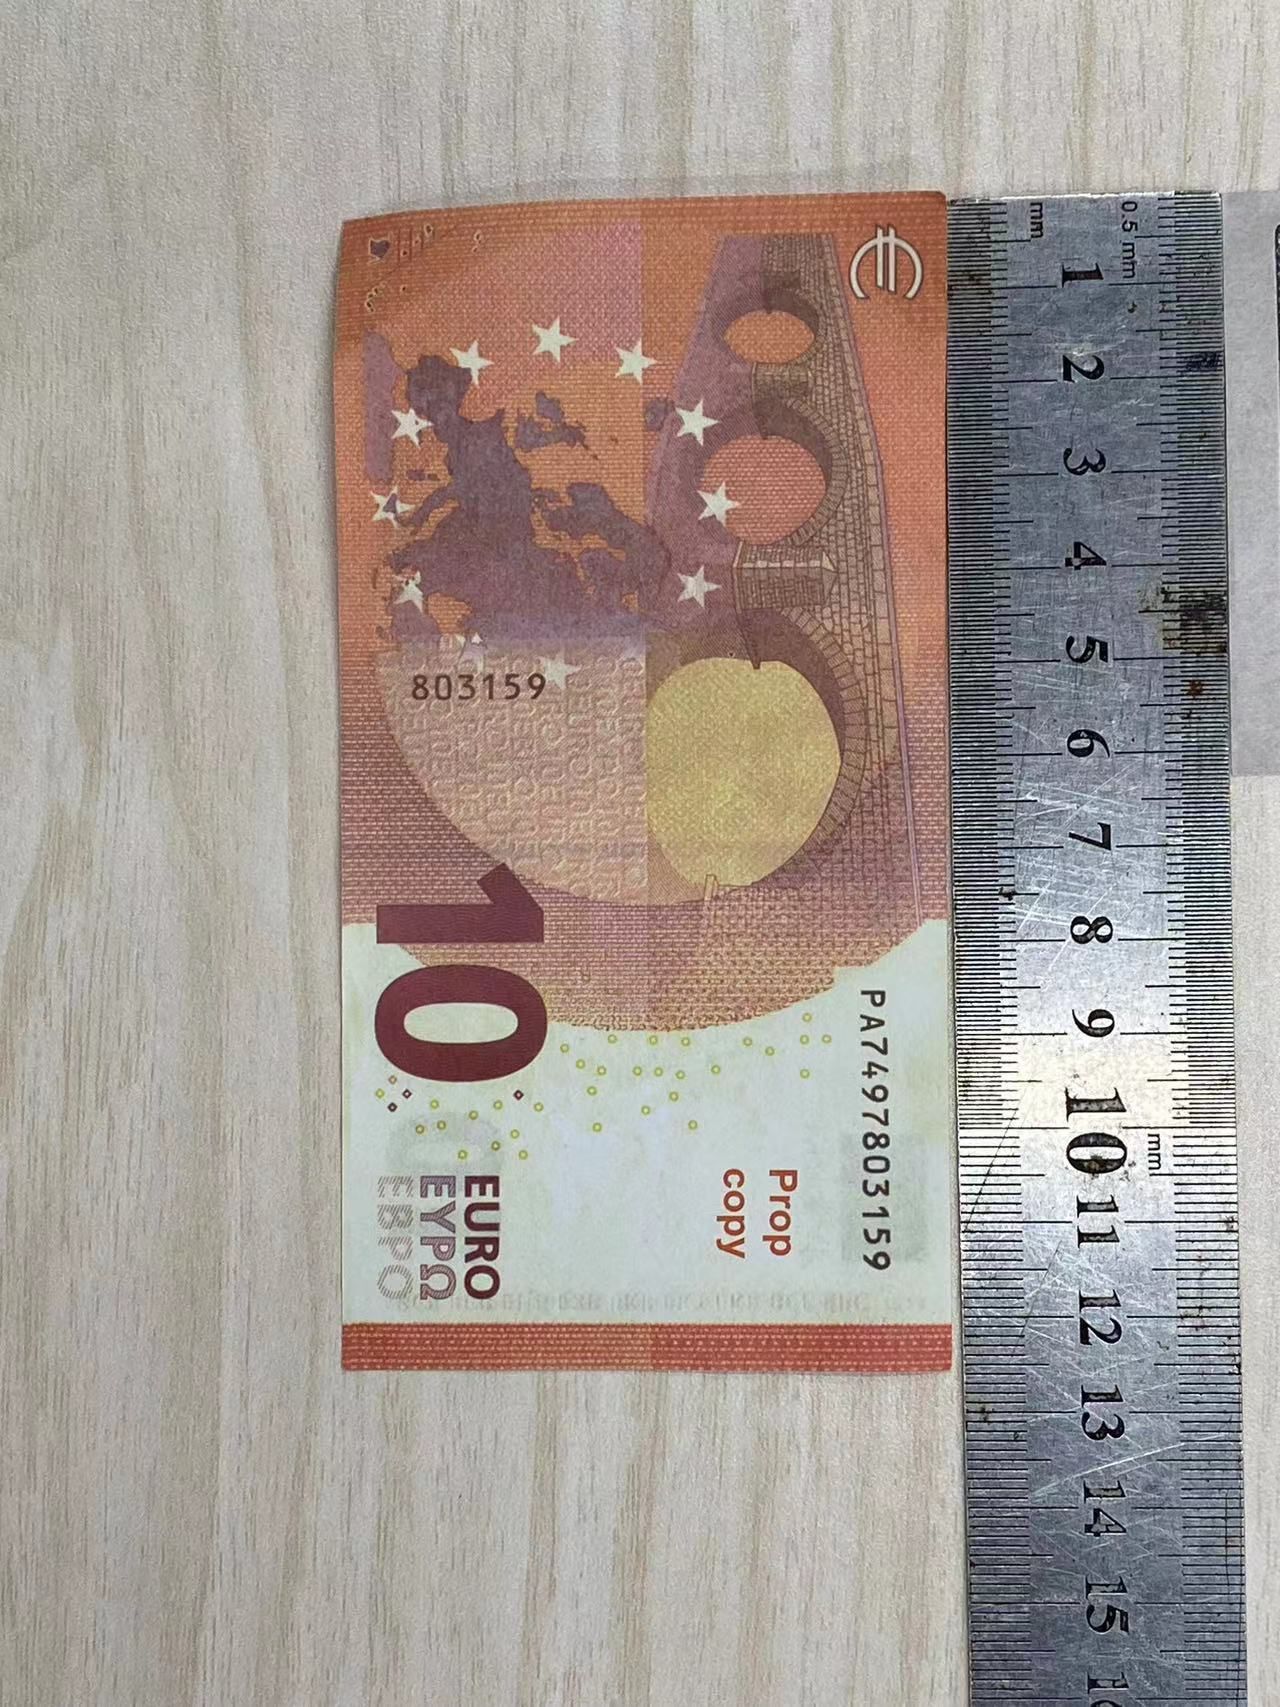 10 euros